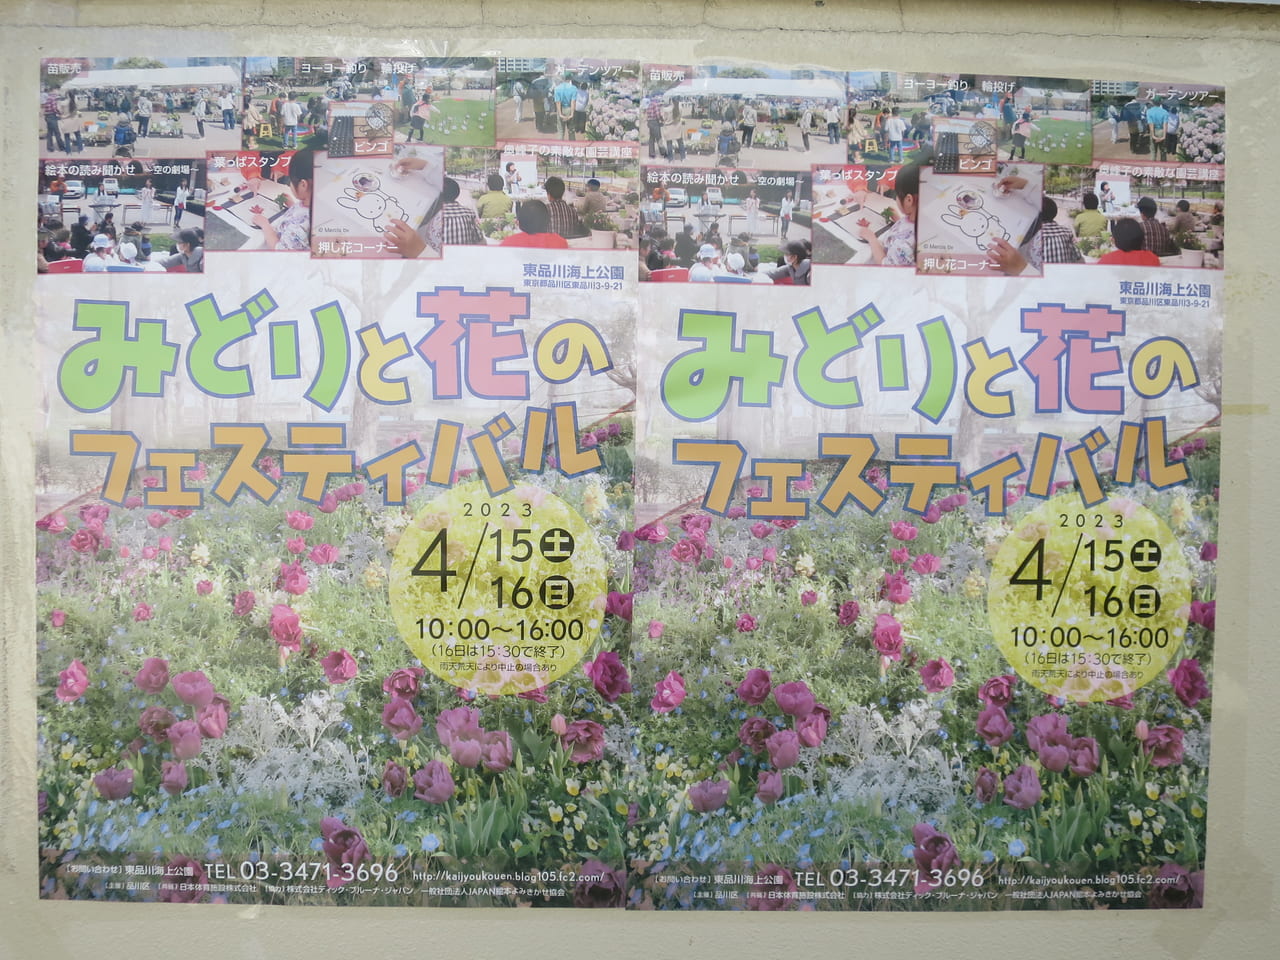 みどりと花のフェスティバル東品川海上公園